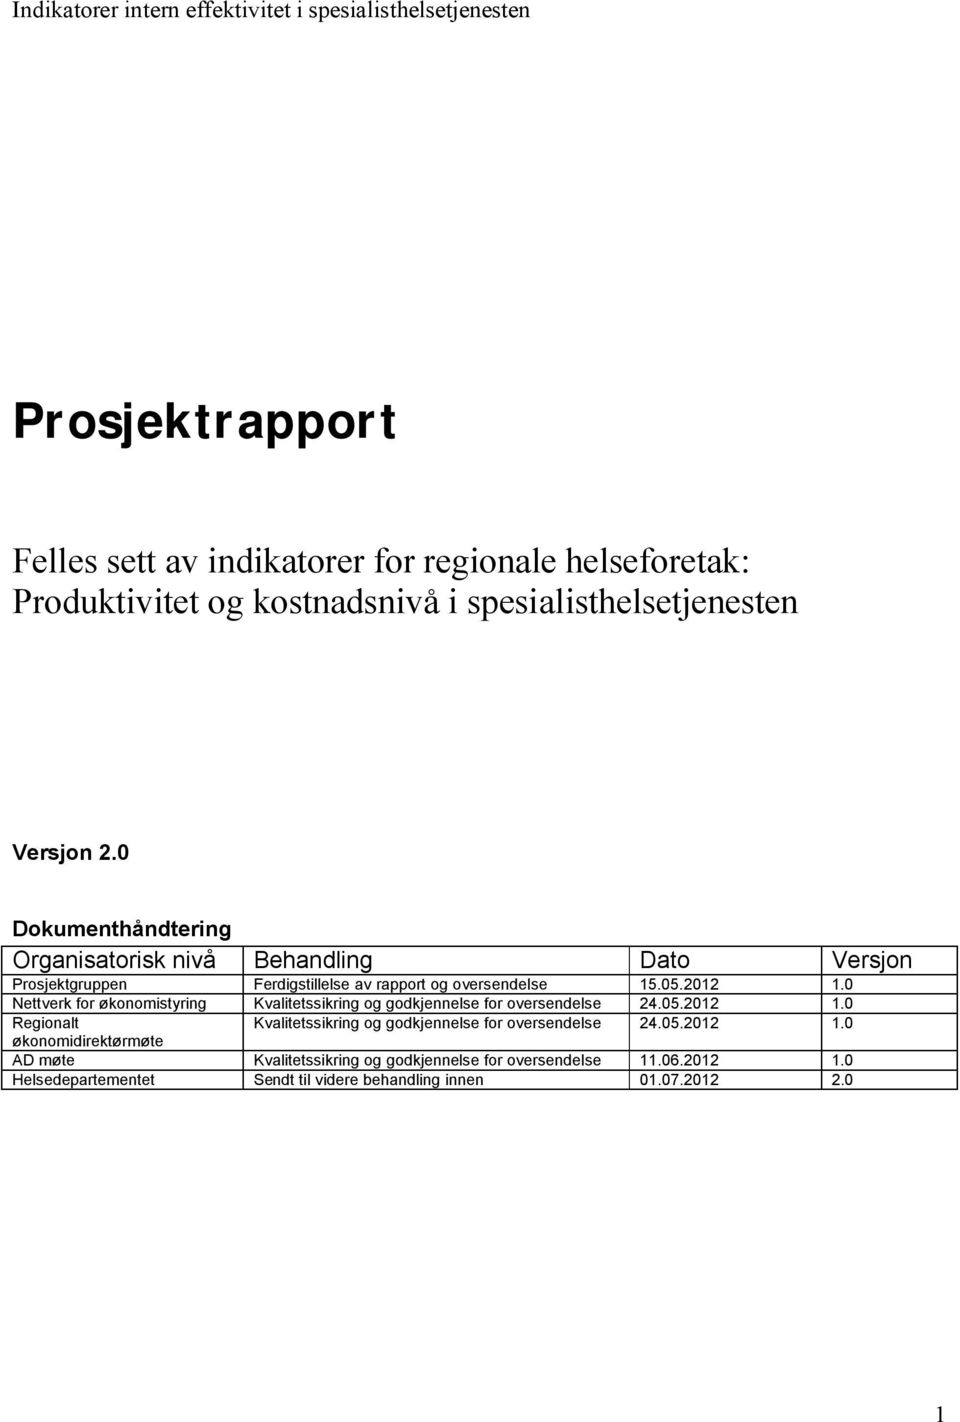 0 Nettverk for økonomistyring Kvalitetssikring og godkjennelse for oversendelse 24.05.2012 1.